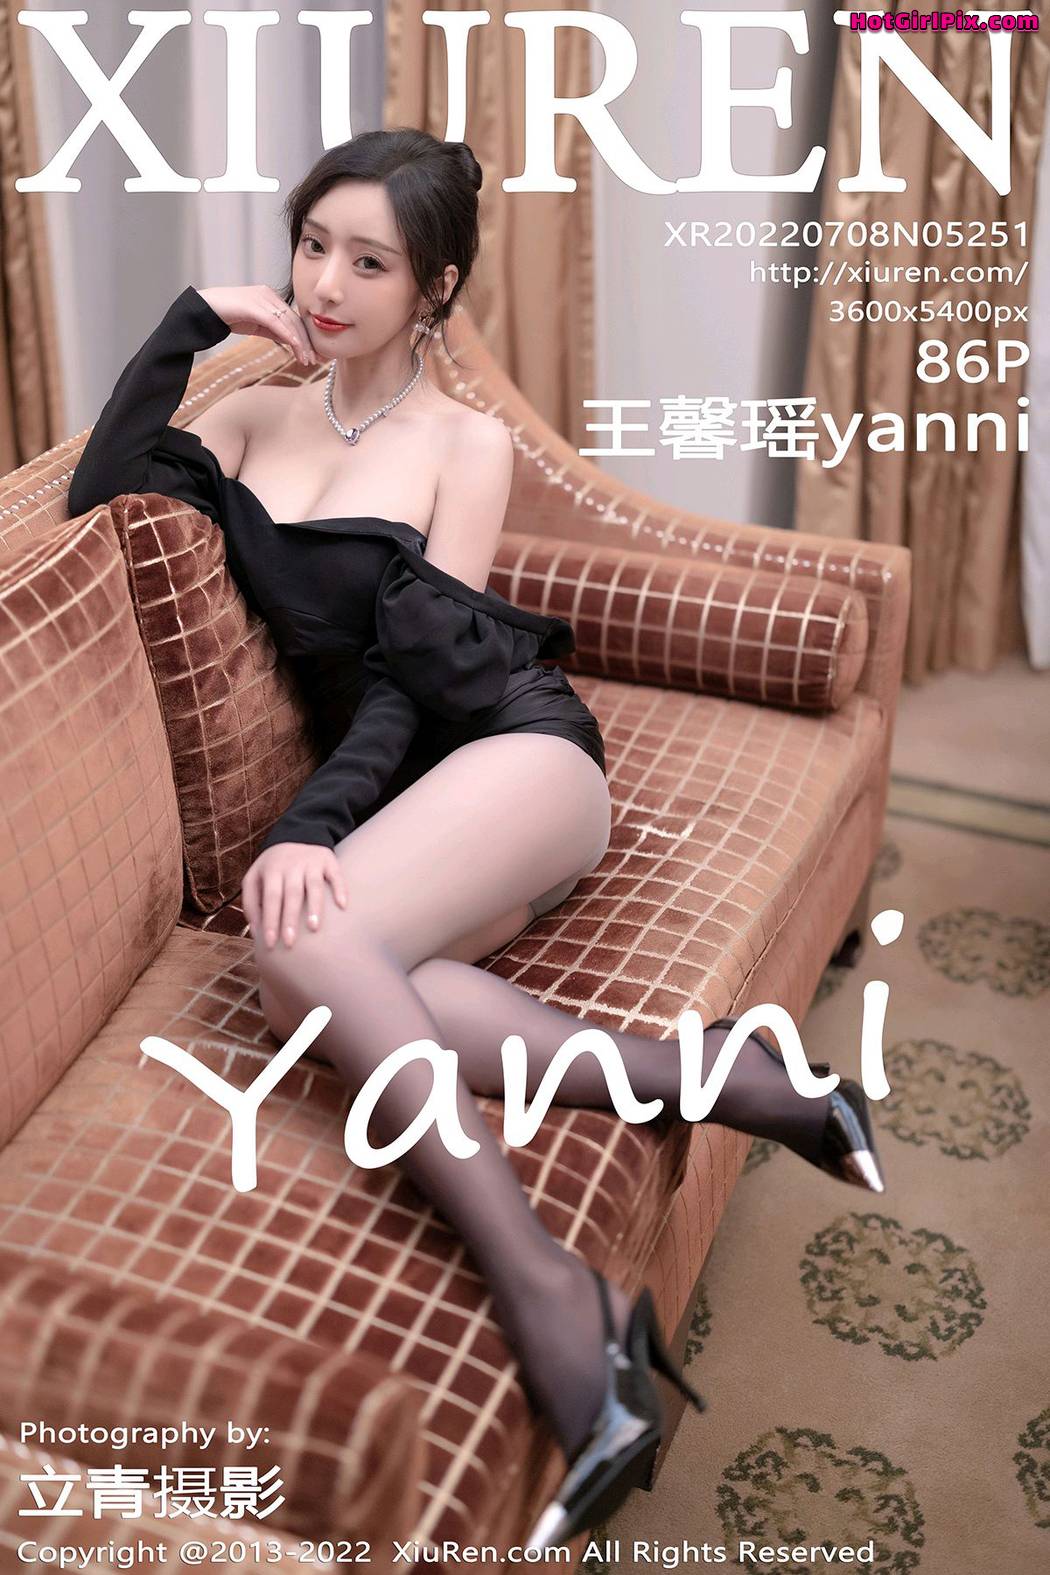 [XIUREN] No.5251 Wang Xin Yao 王馨瑶yanni Cover Photo